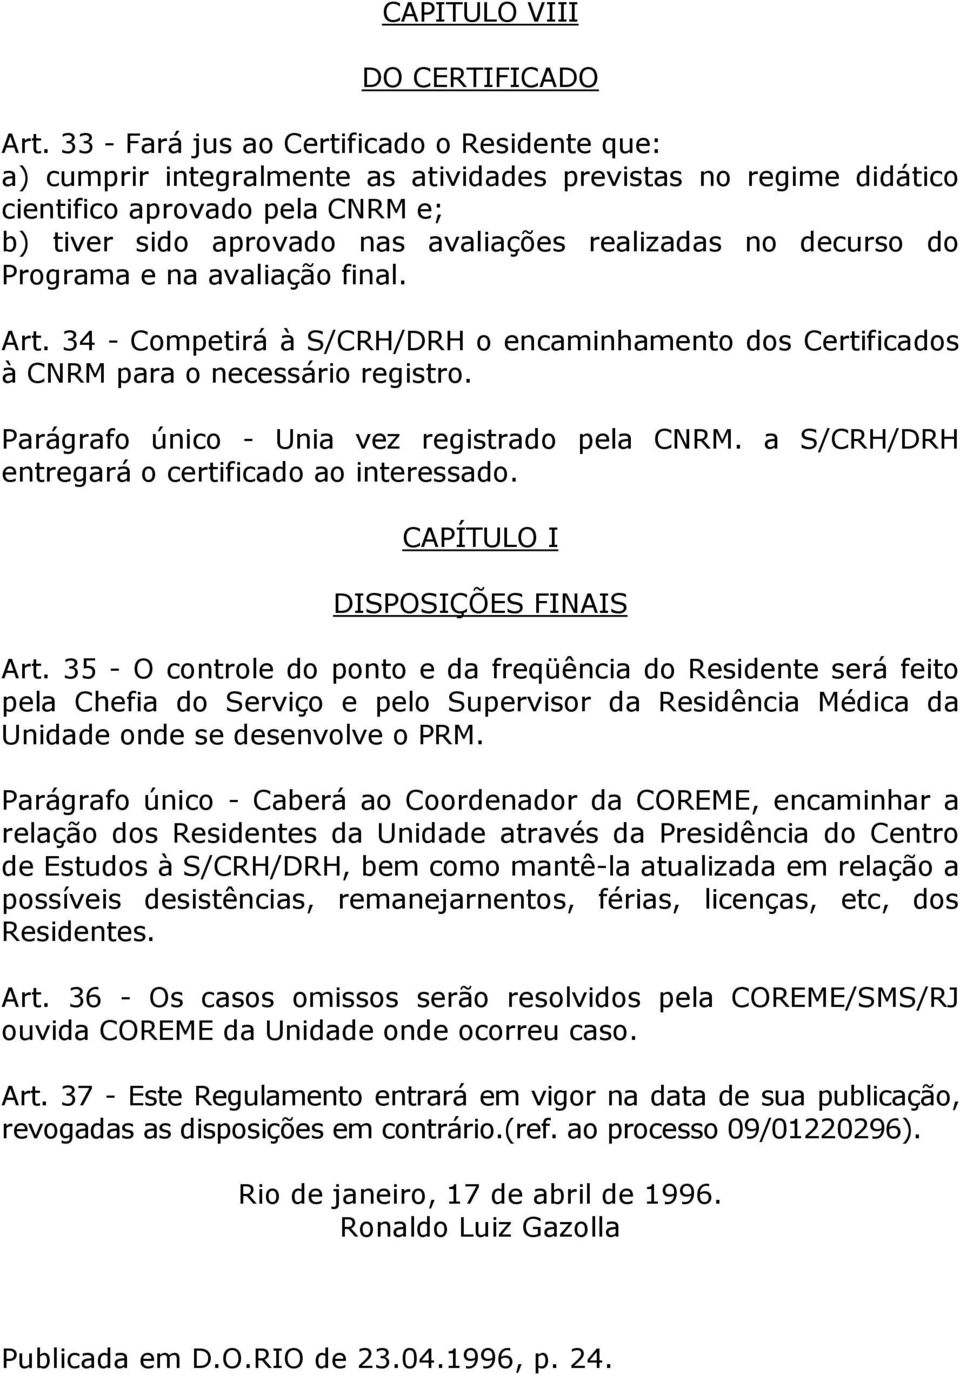 decurso do Programa e na avaliação final. Art. 34 - Competirá à S/CRH/DRH o encaminhamento dos Certificados à CNRM para o necessário registro. Parágrafo único - Unia vez registrado pela CNRM.